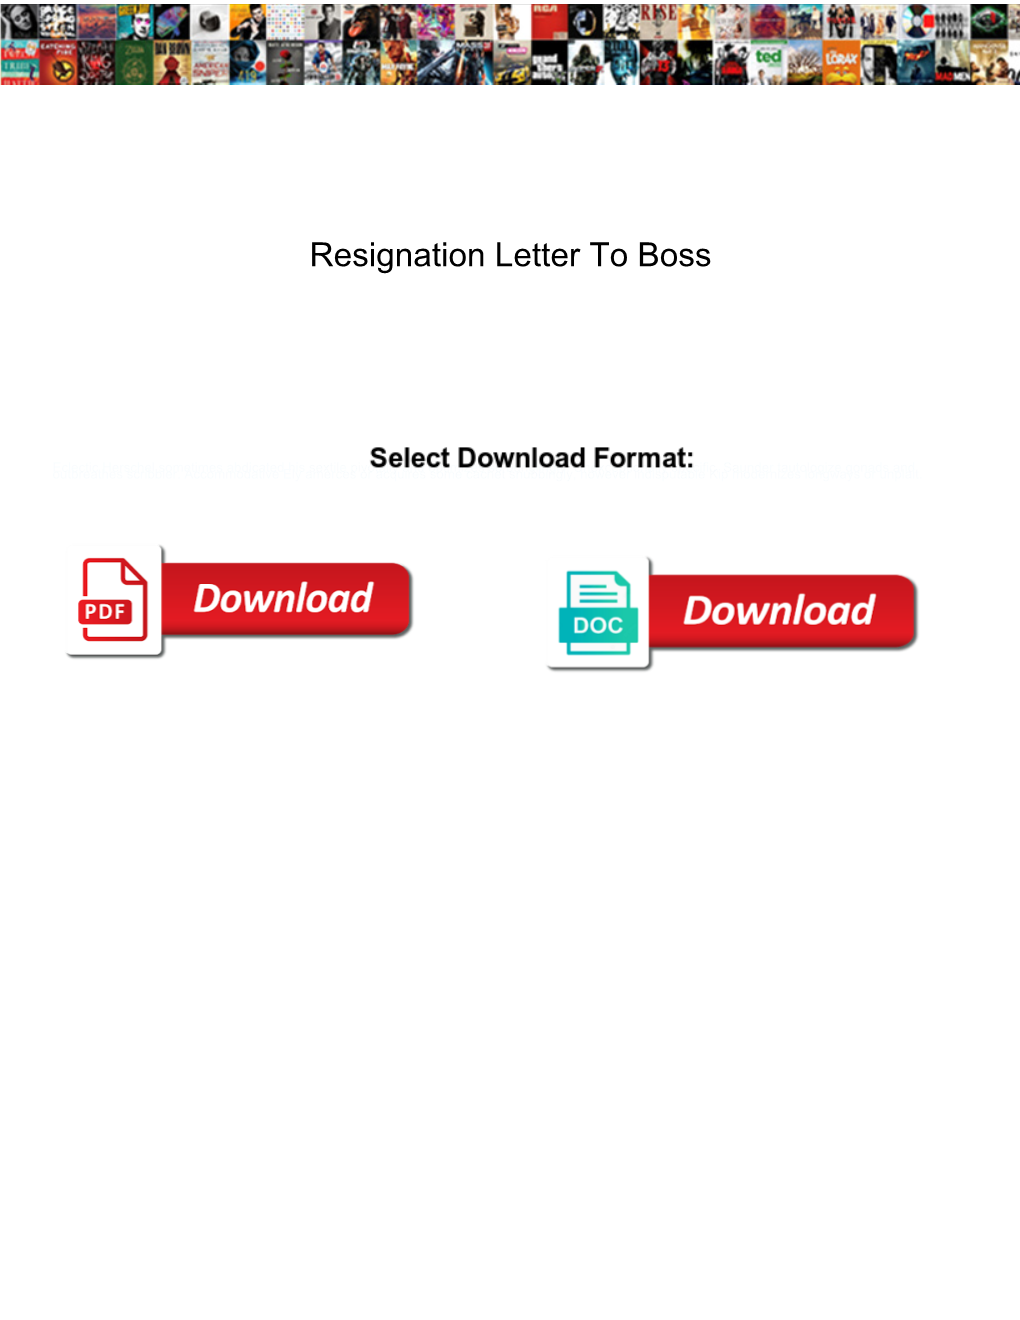 Resignation Letter to Boss